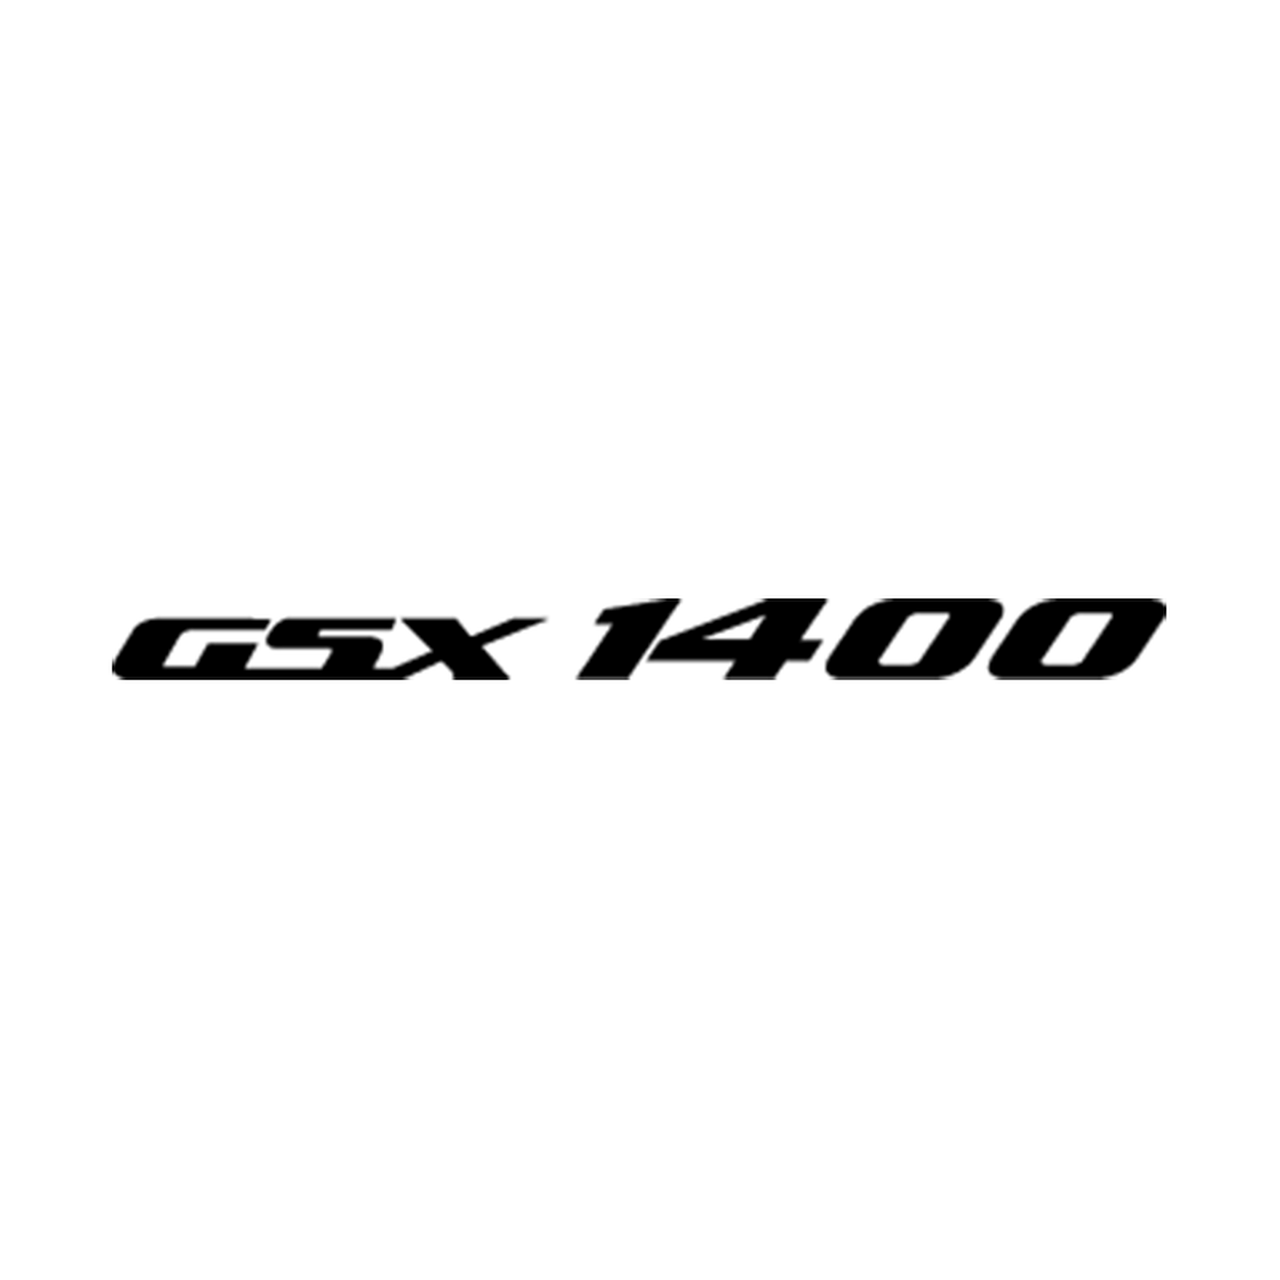 1400 Logo - 21529 Suzuki Gsx 1400 Logo Vinyl Decal